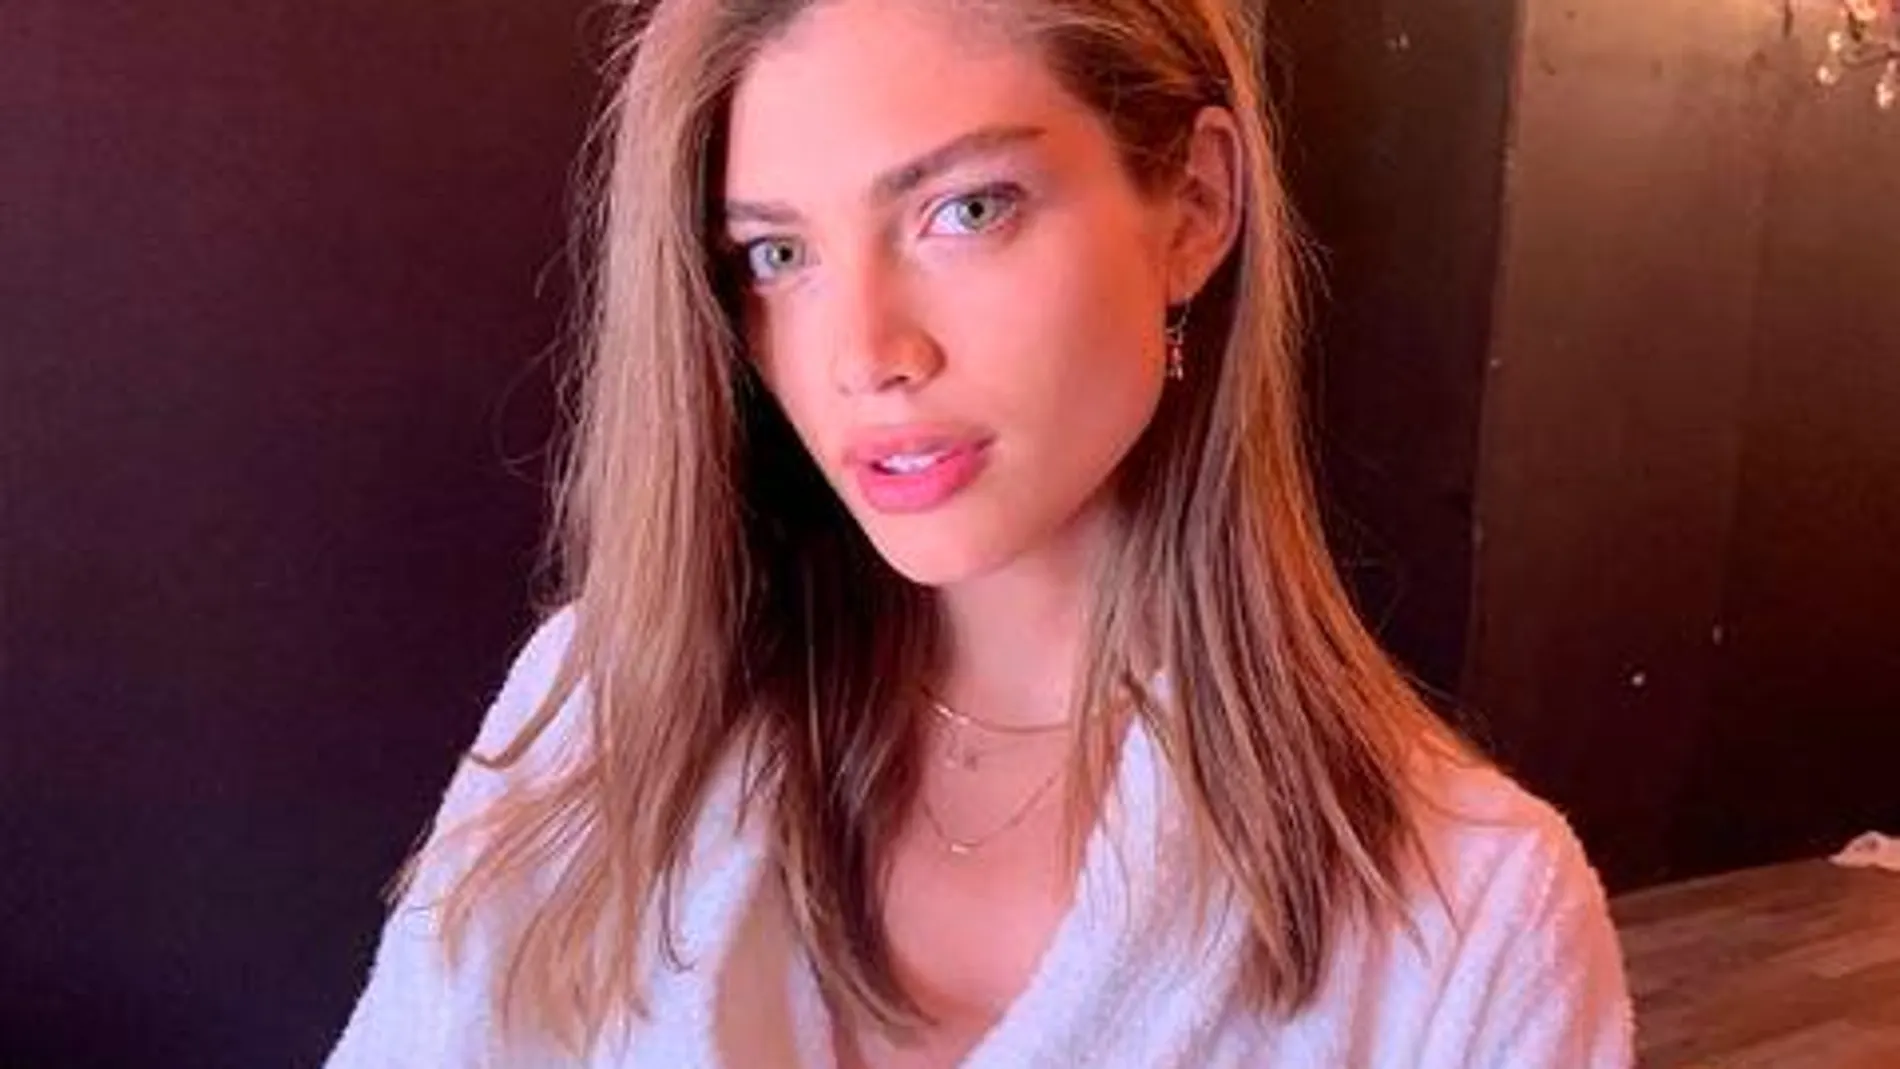 La modelo de 22 años, compartió hace unos días en su cuenta de Instagram un vídeo y una foto de lo que era un sesión de fotos de Victoria’s Secret